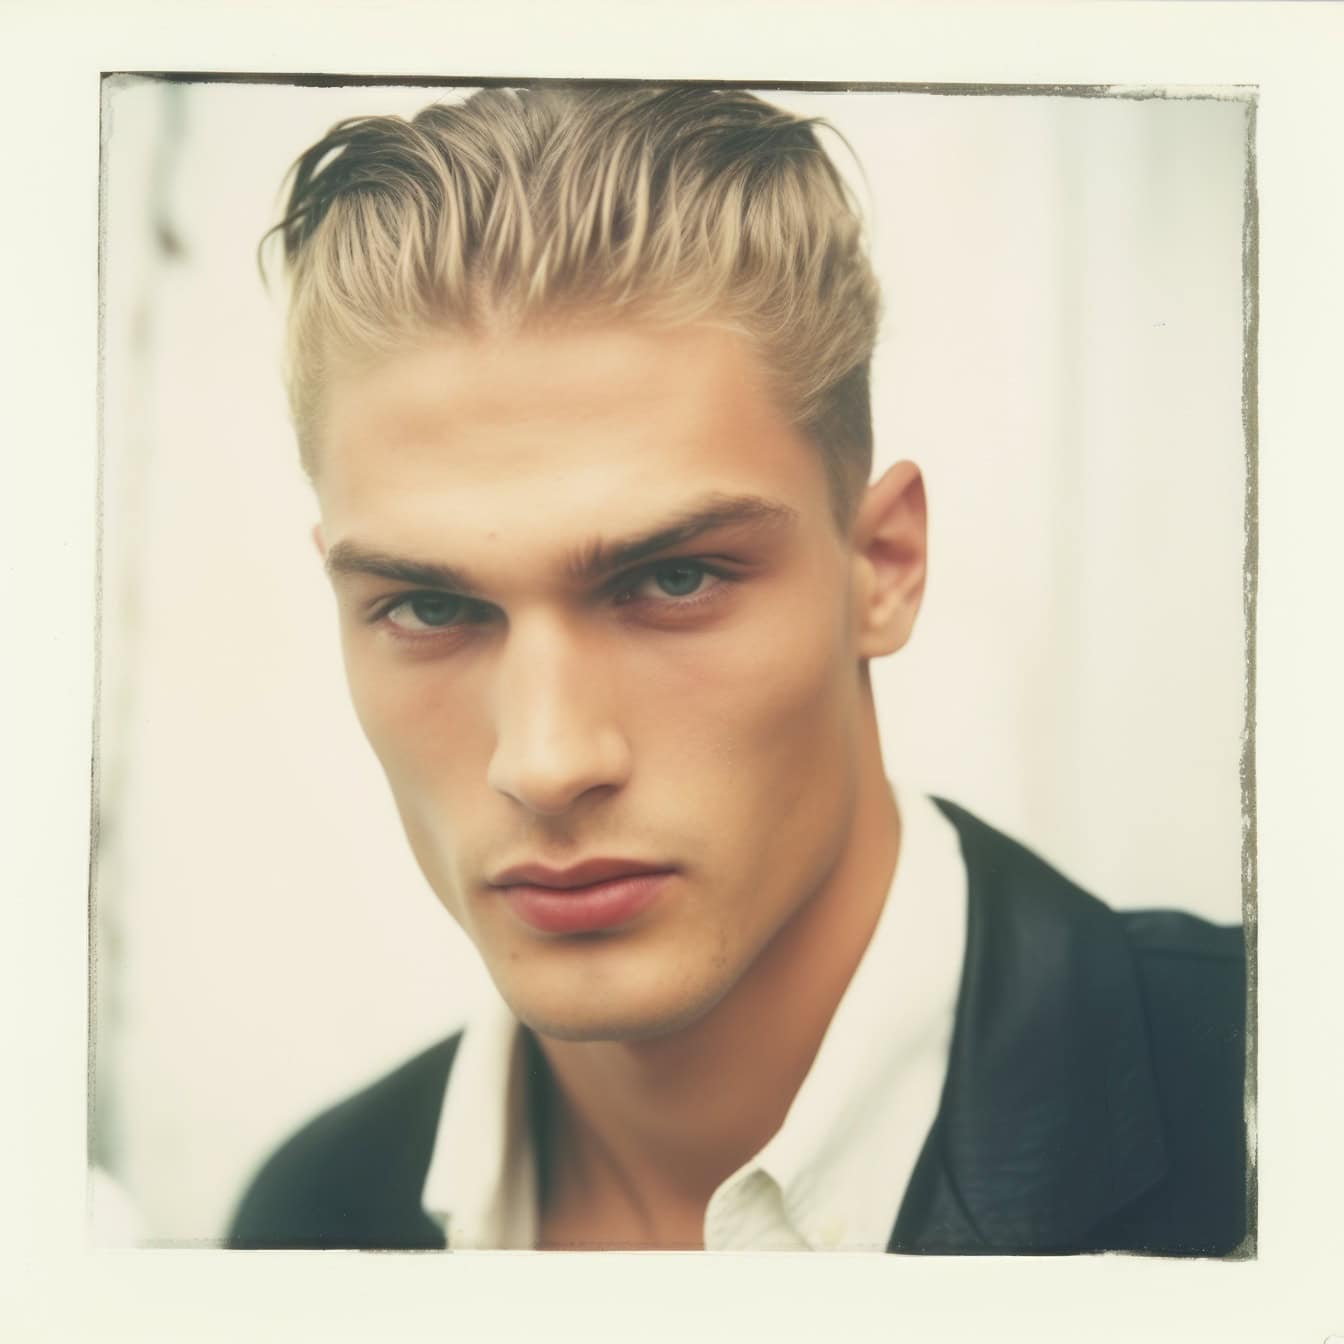 Foto polaroid desbotada velha de um modelo de foto de homem muito bonito com cabelo loiro